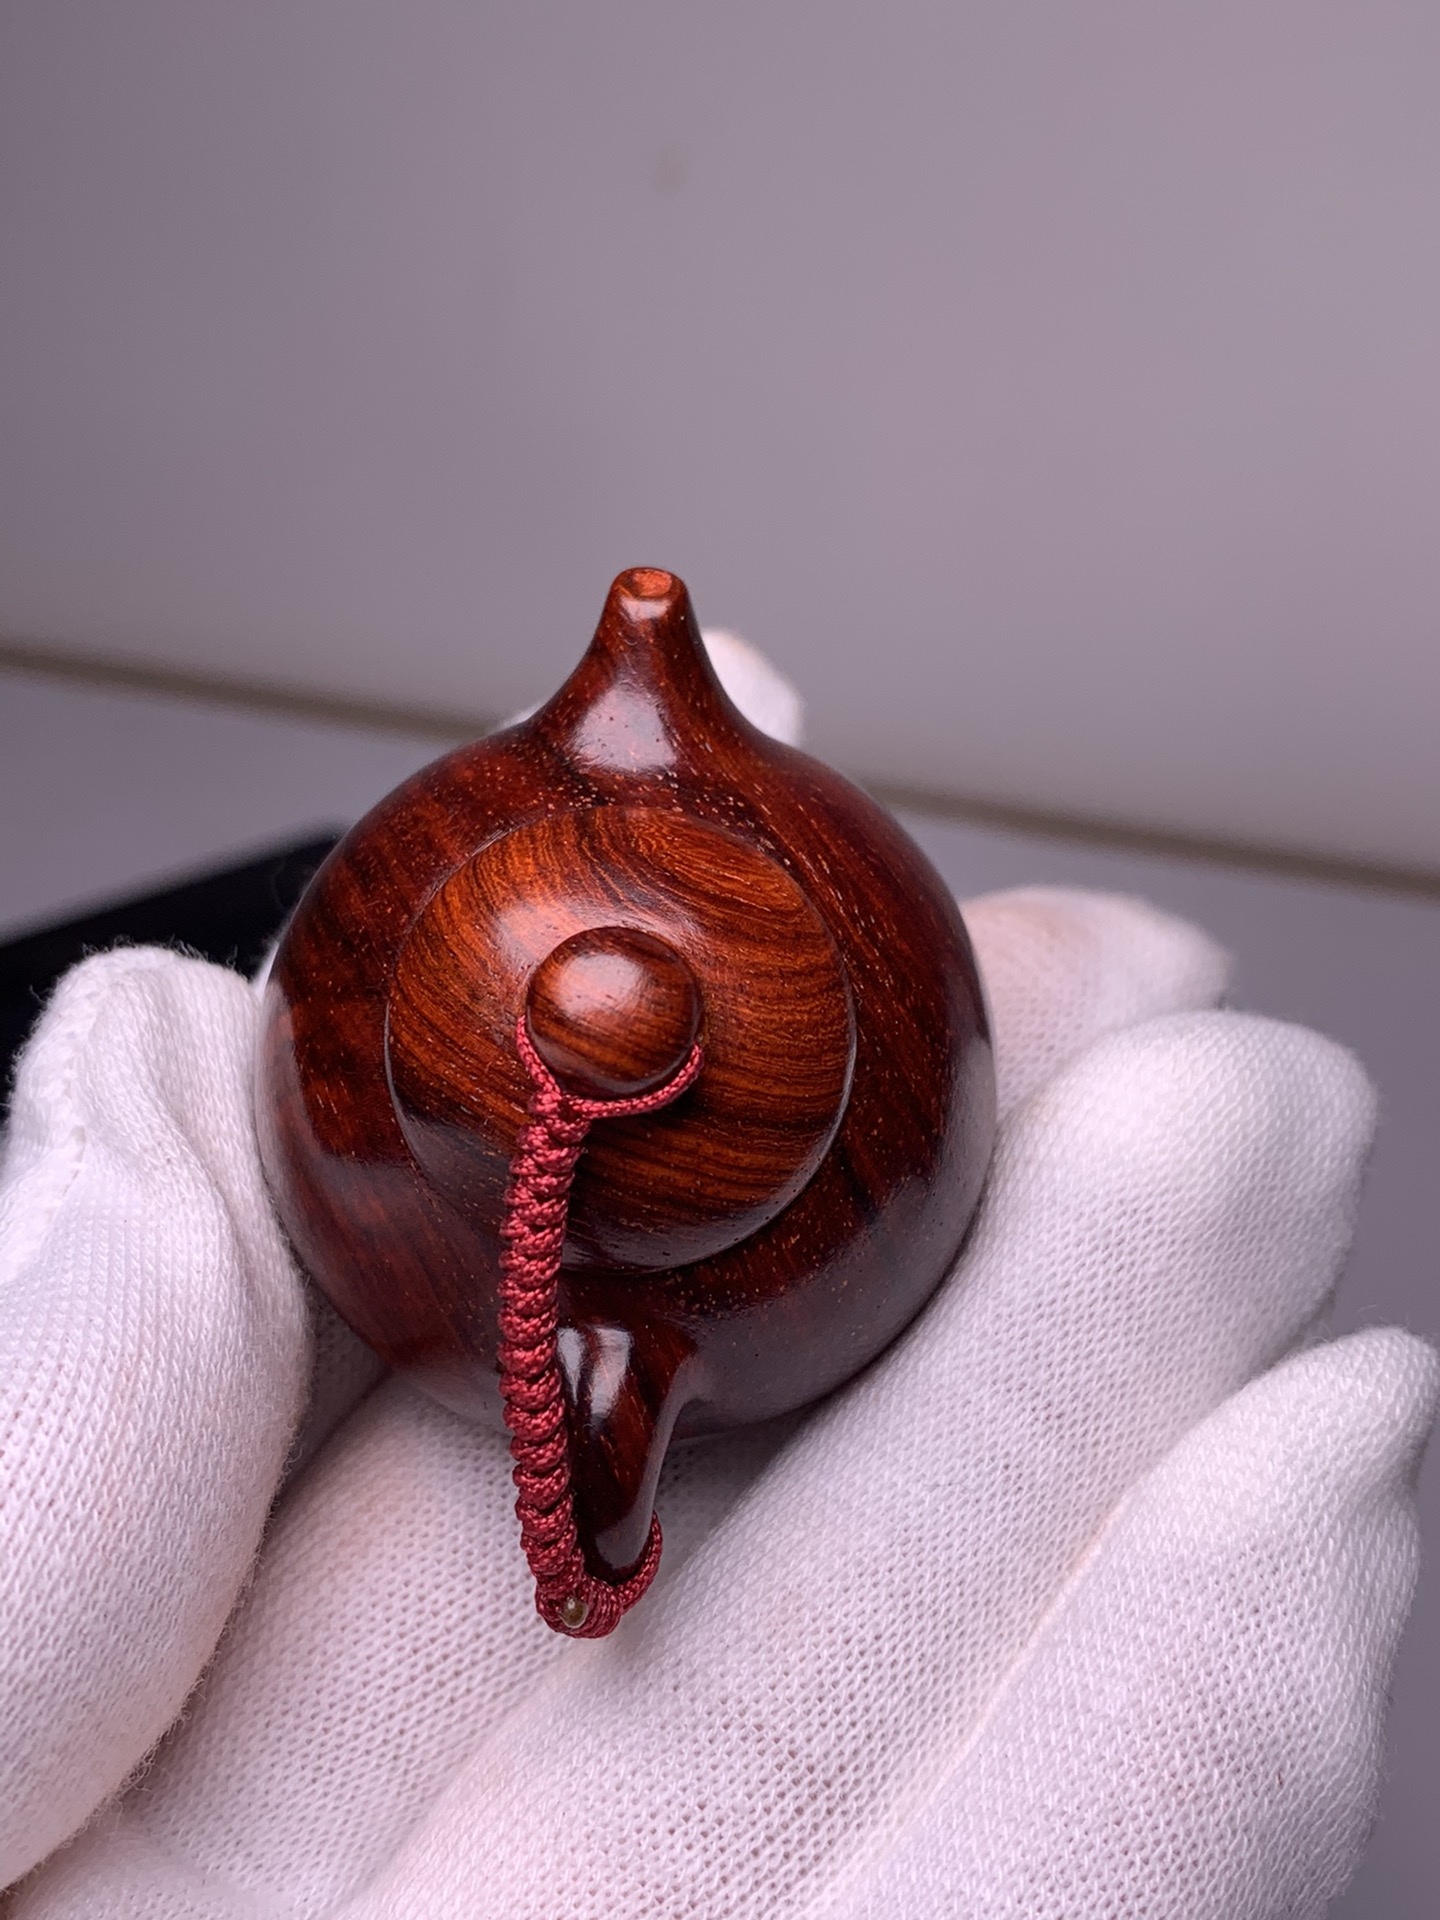 迷你型小茶壶印度小叶紫檀木雕刻茶壶装饰摆件手把件